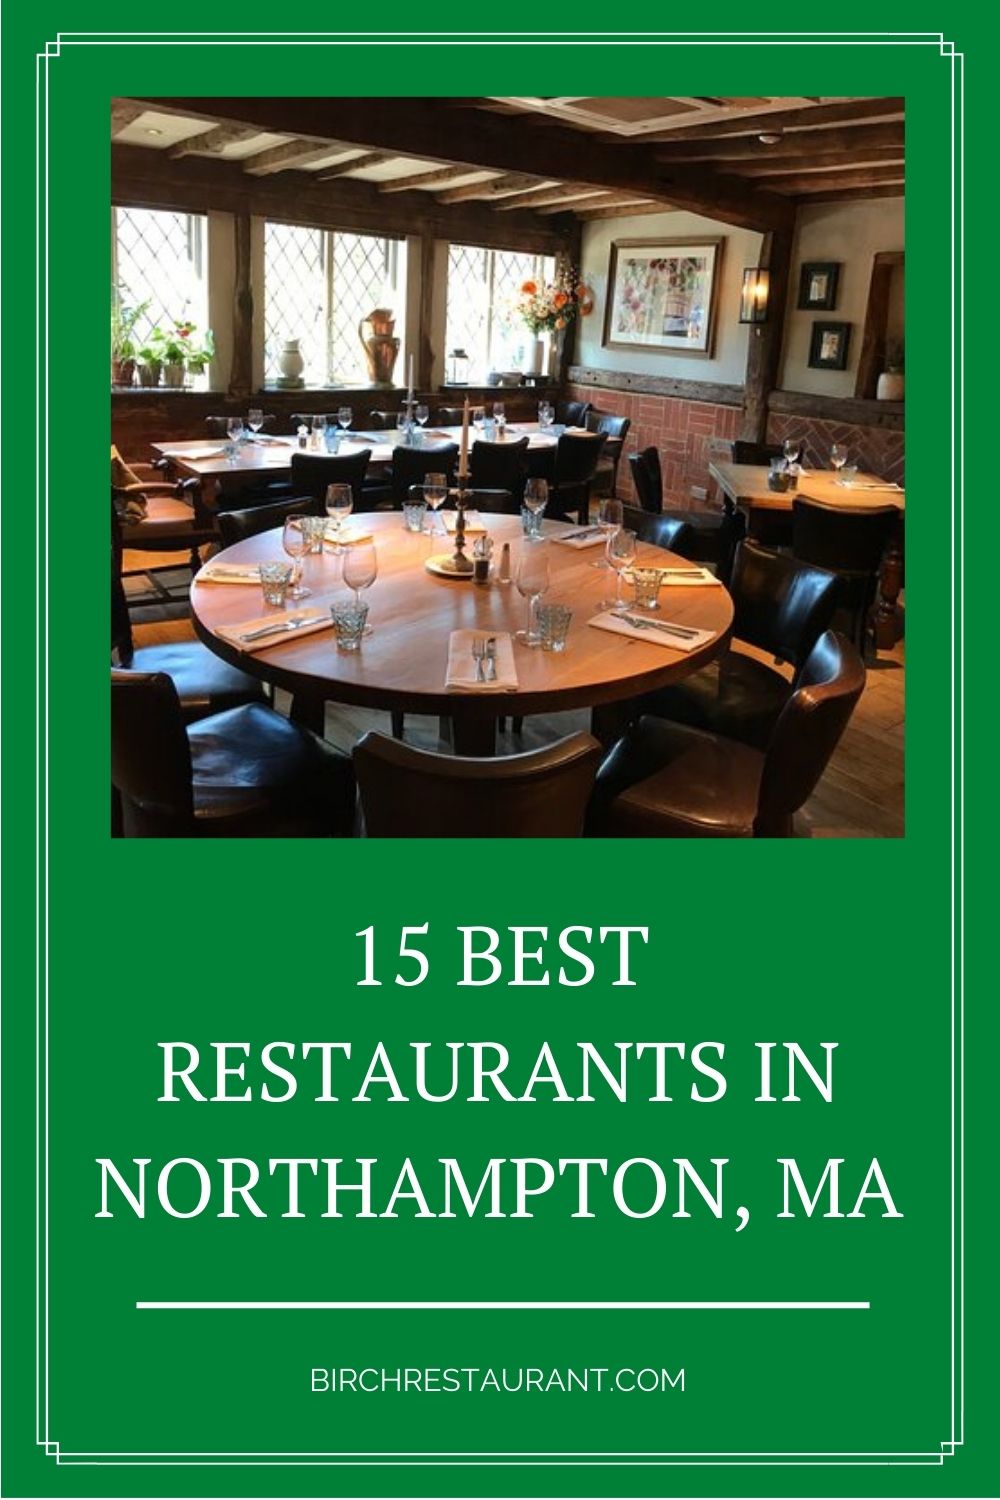 Best Restaurants in Northampton